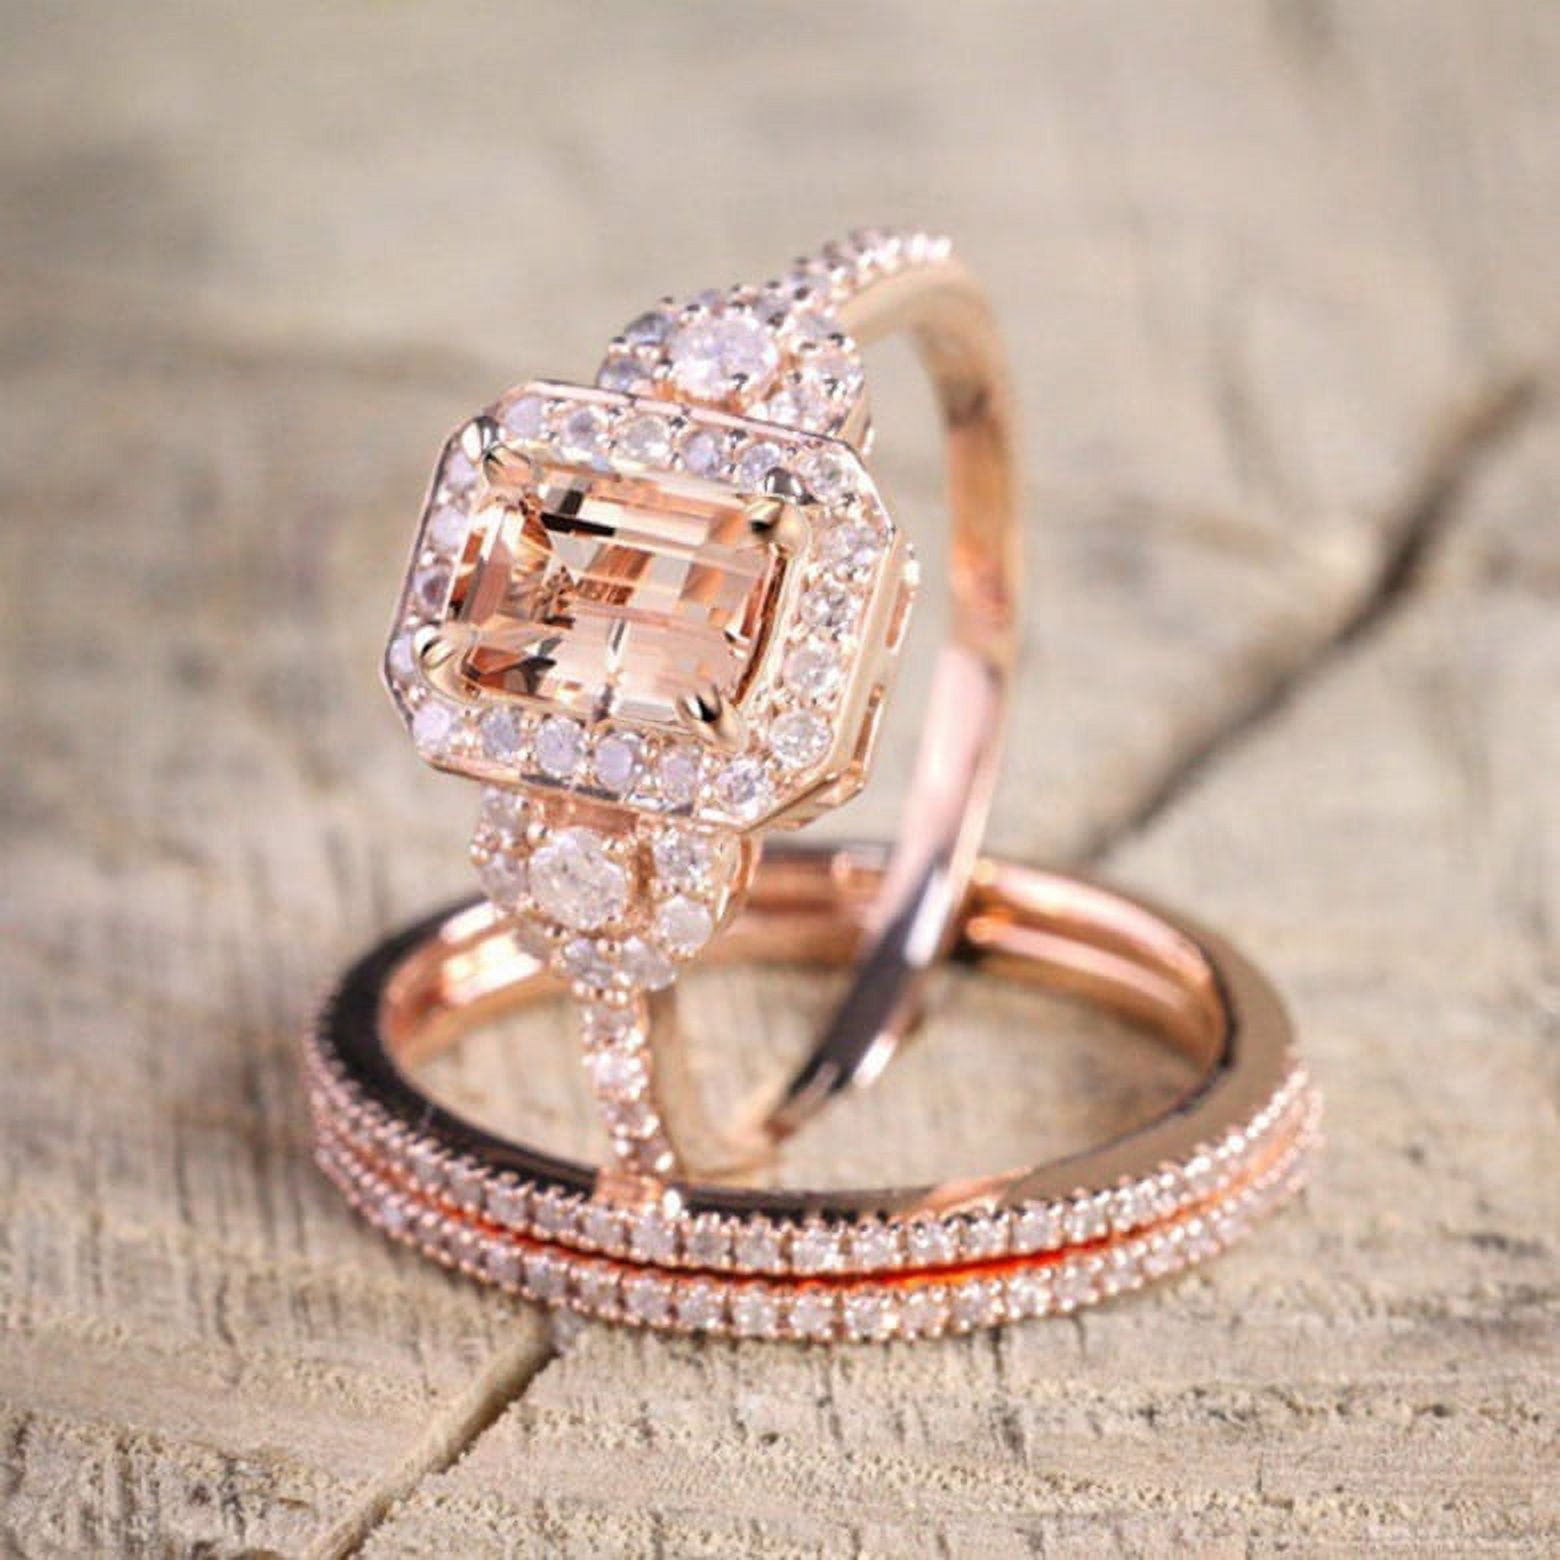 Round and Square Diamond Ring - Diamonds By Raymond Lee